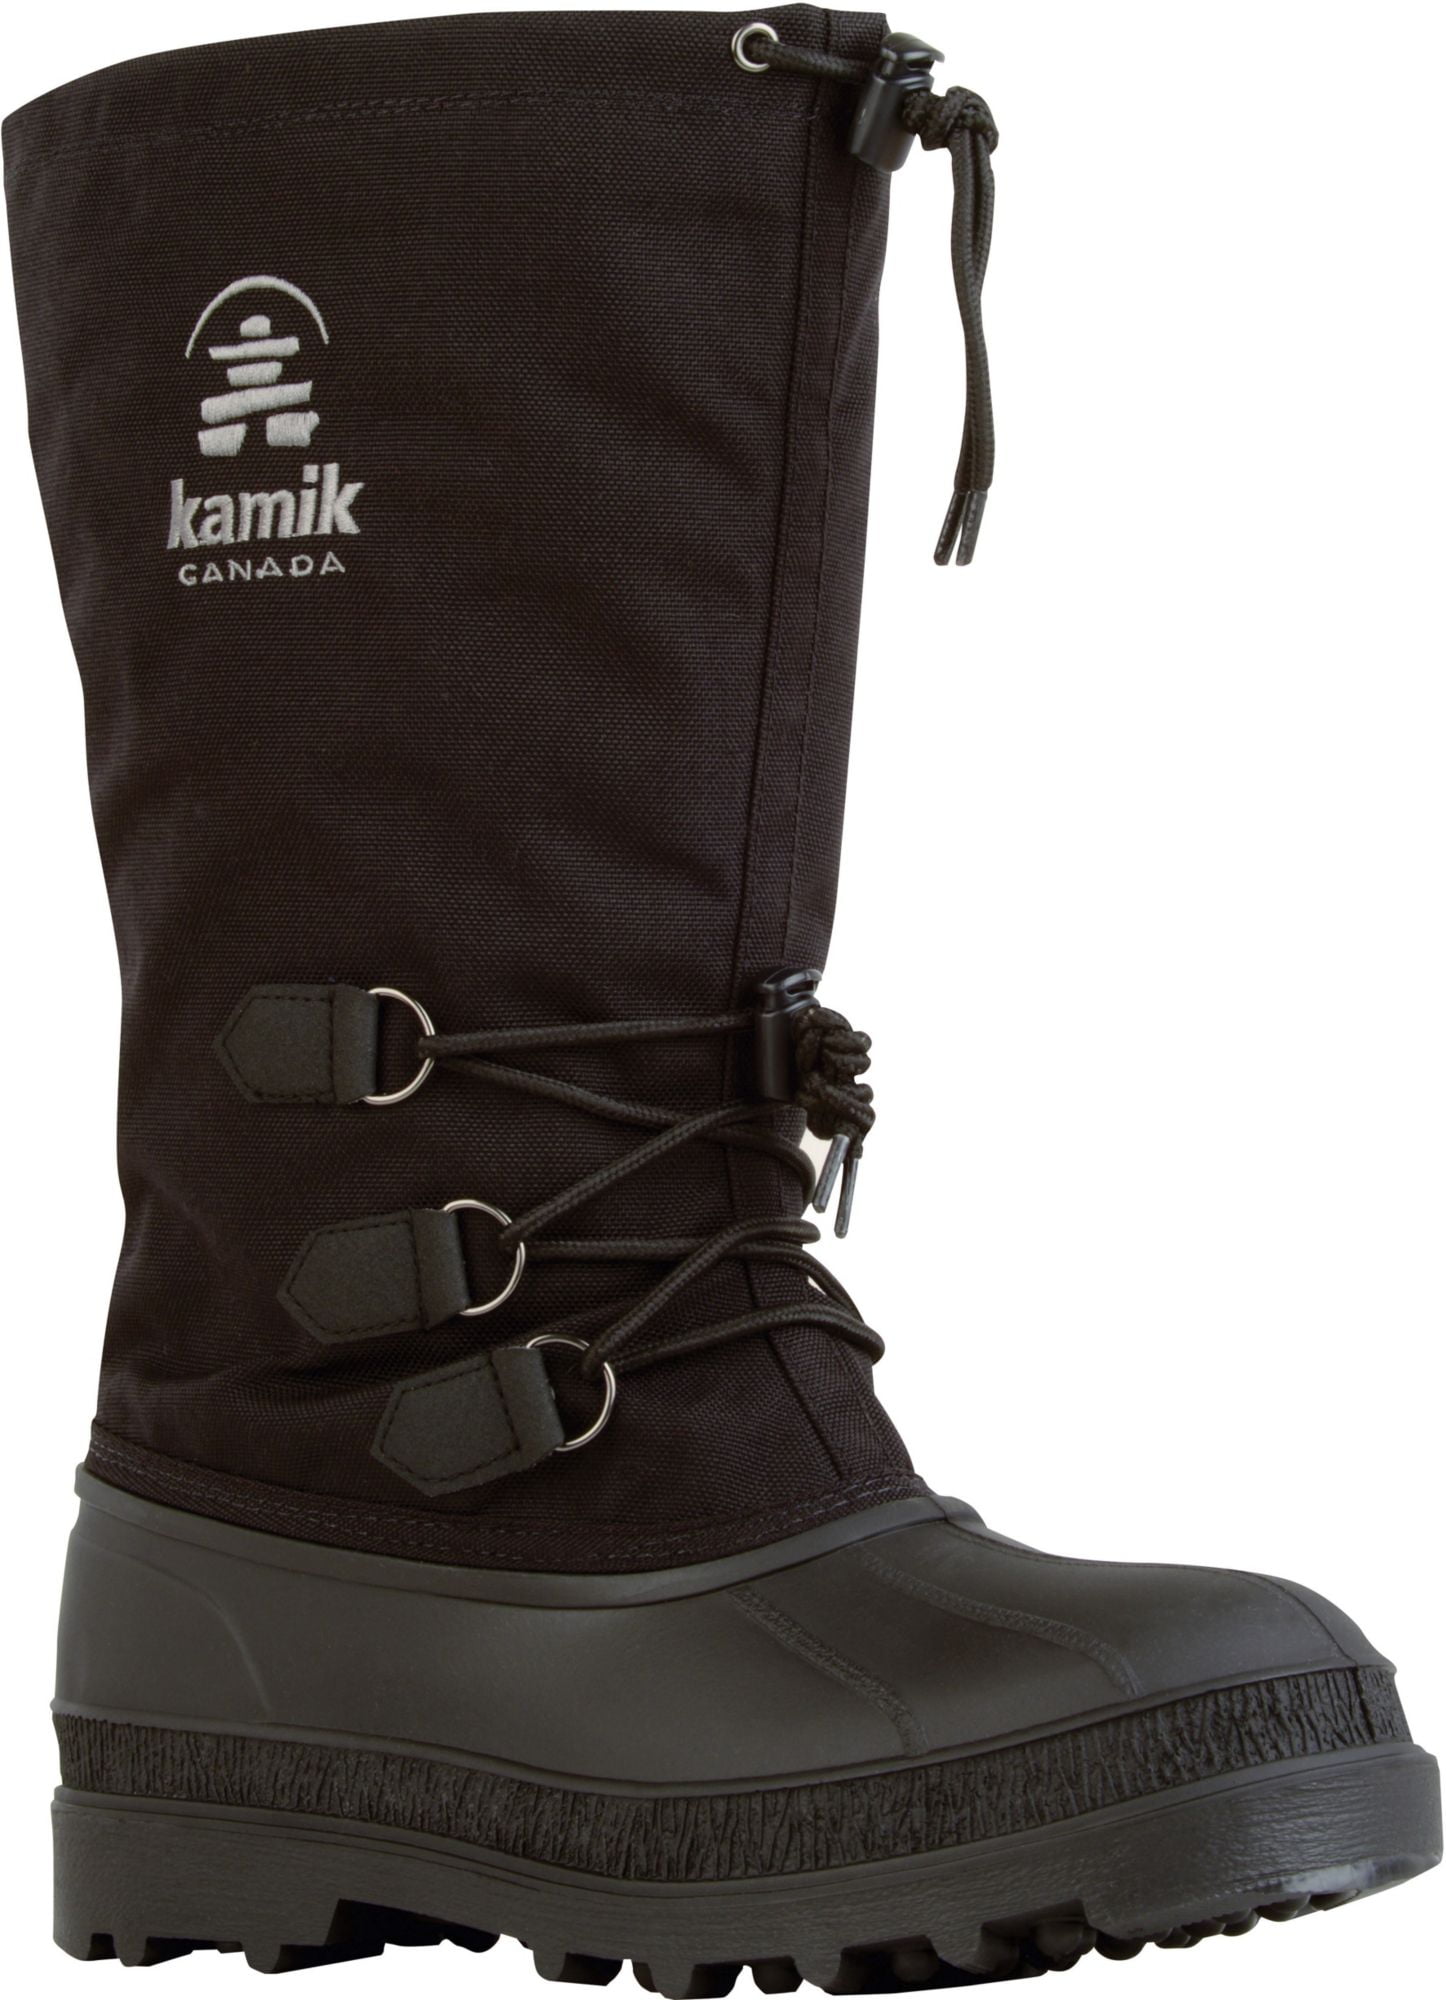 waterproof snow boots walmart